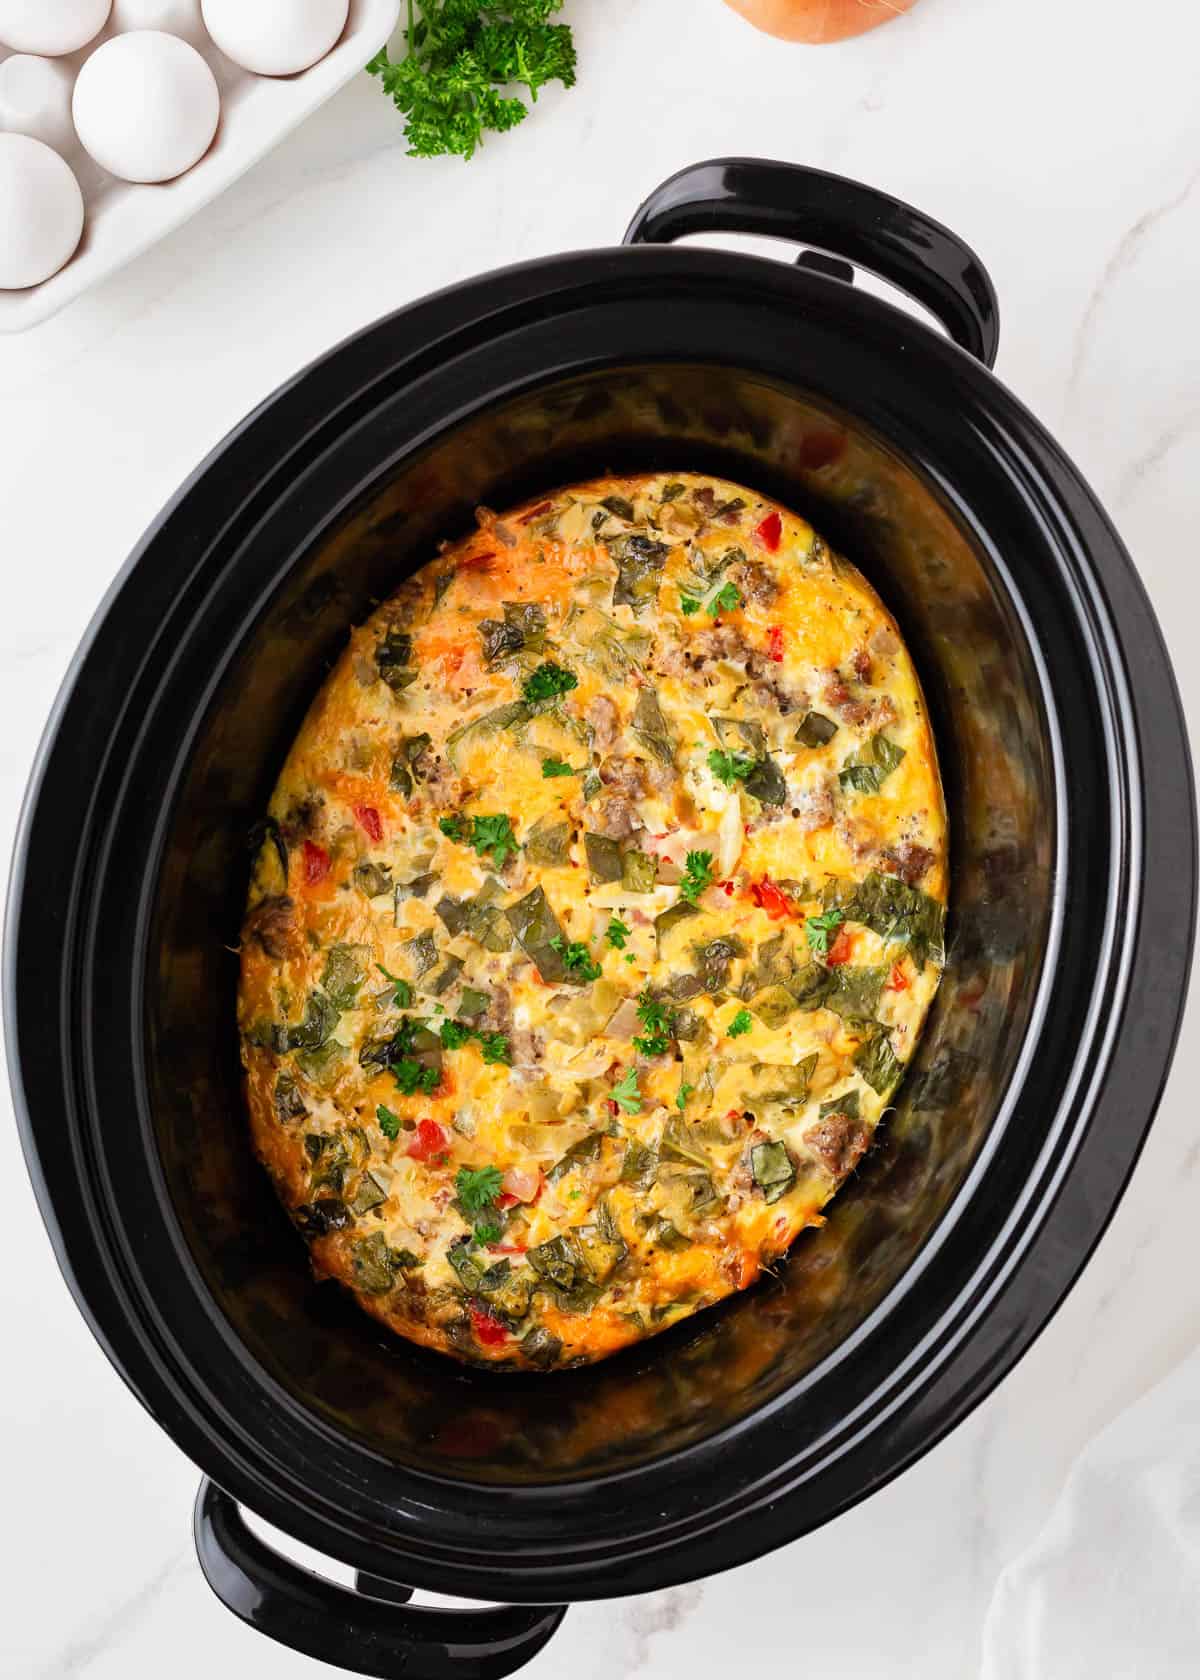 Crockpot breakfast casserole in a pot.